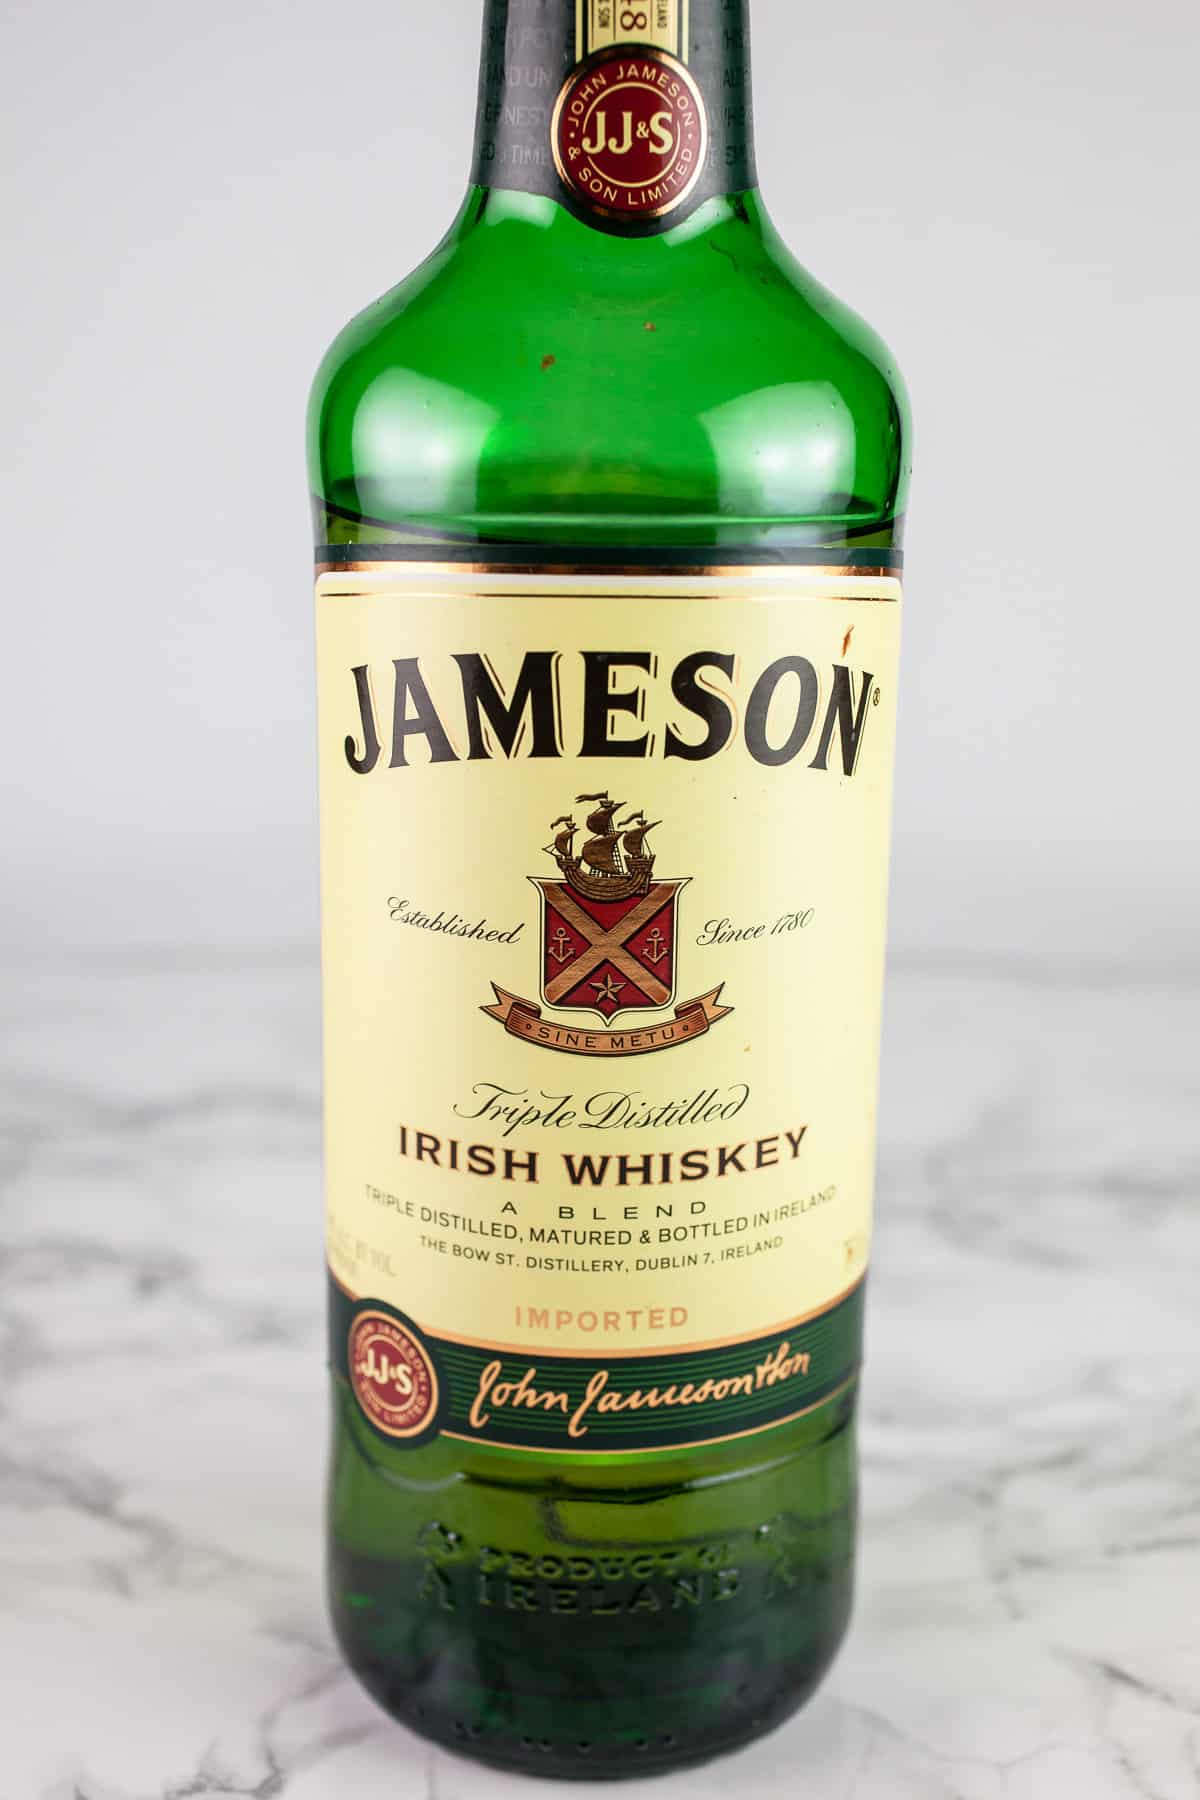 Bottle of Jameson Irish whiskey on white surface.